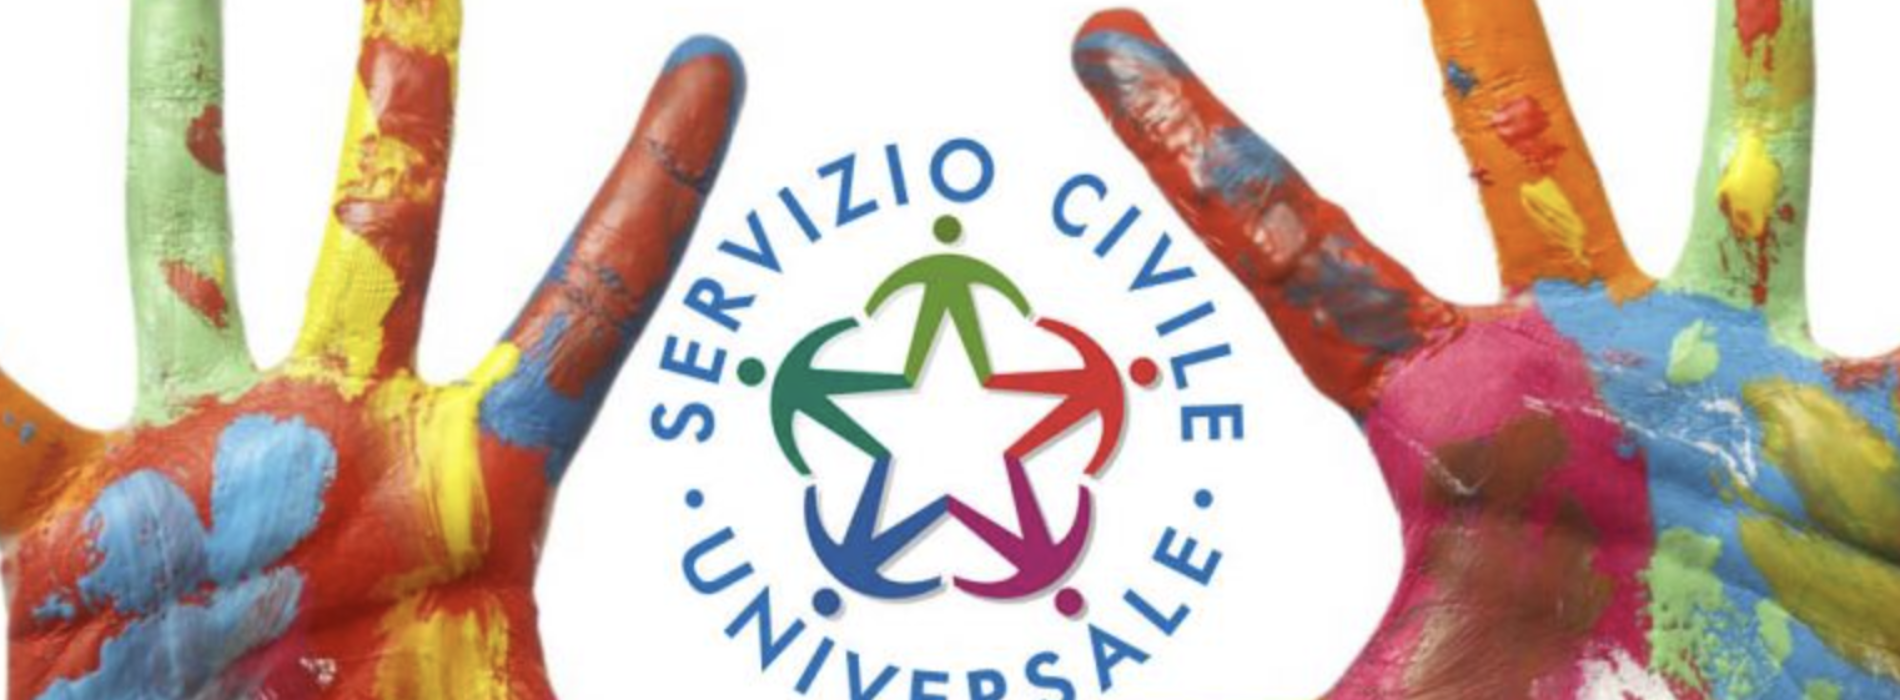 Opportunità in provincia di Caserta, 175 posti di Servizio civile